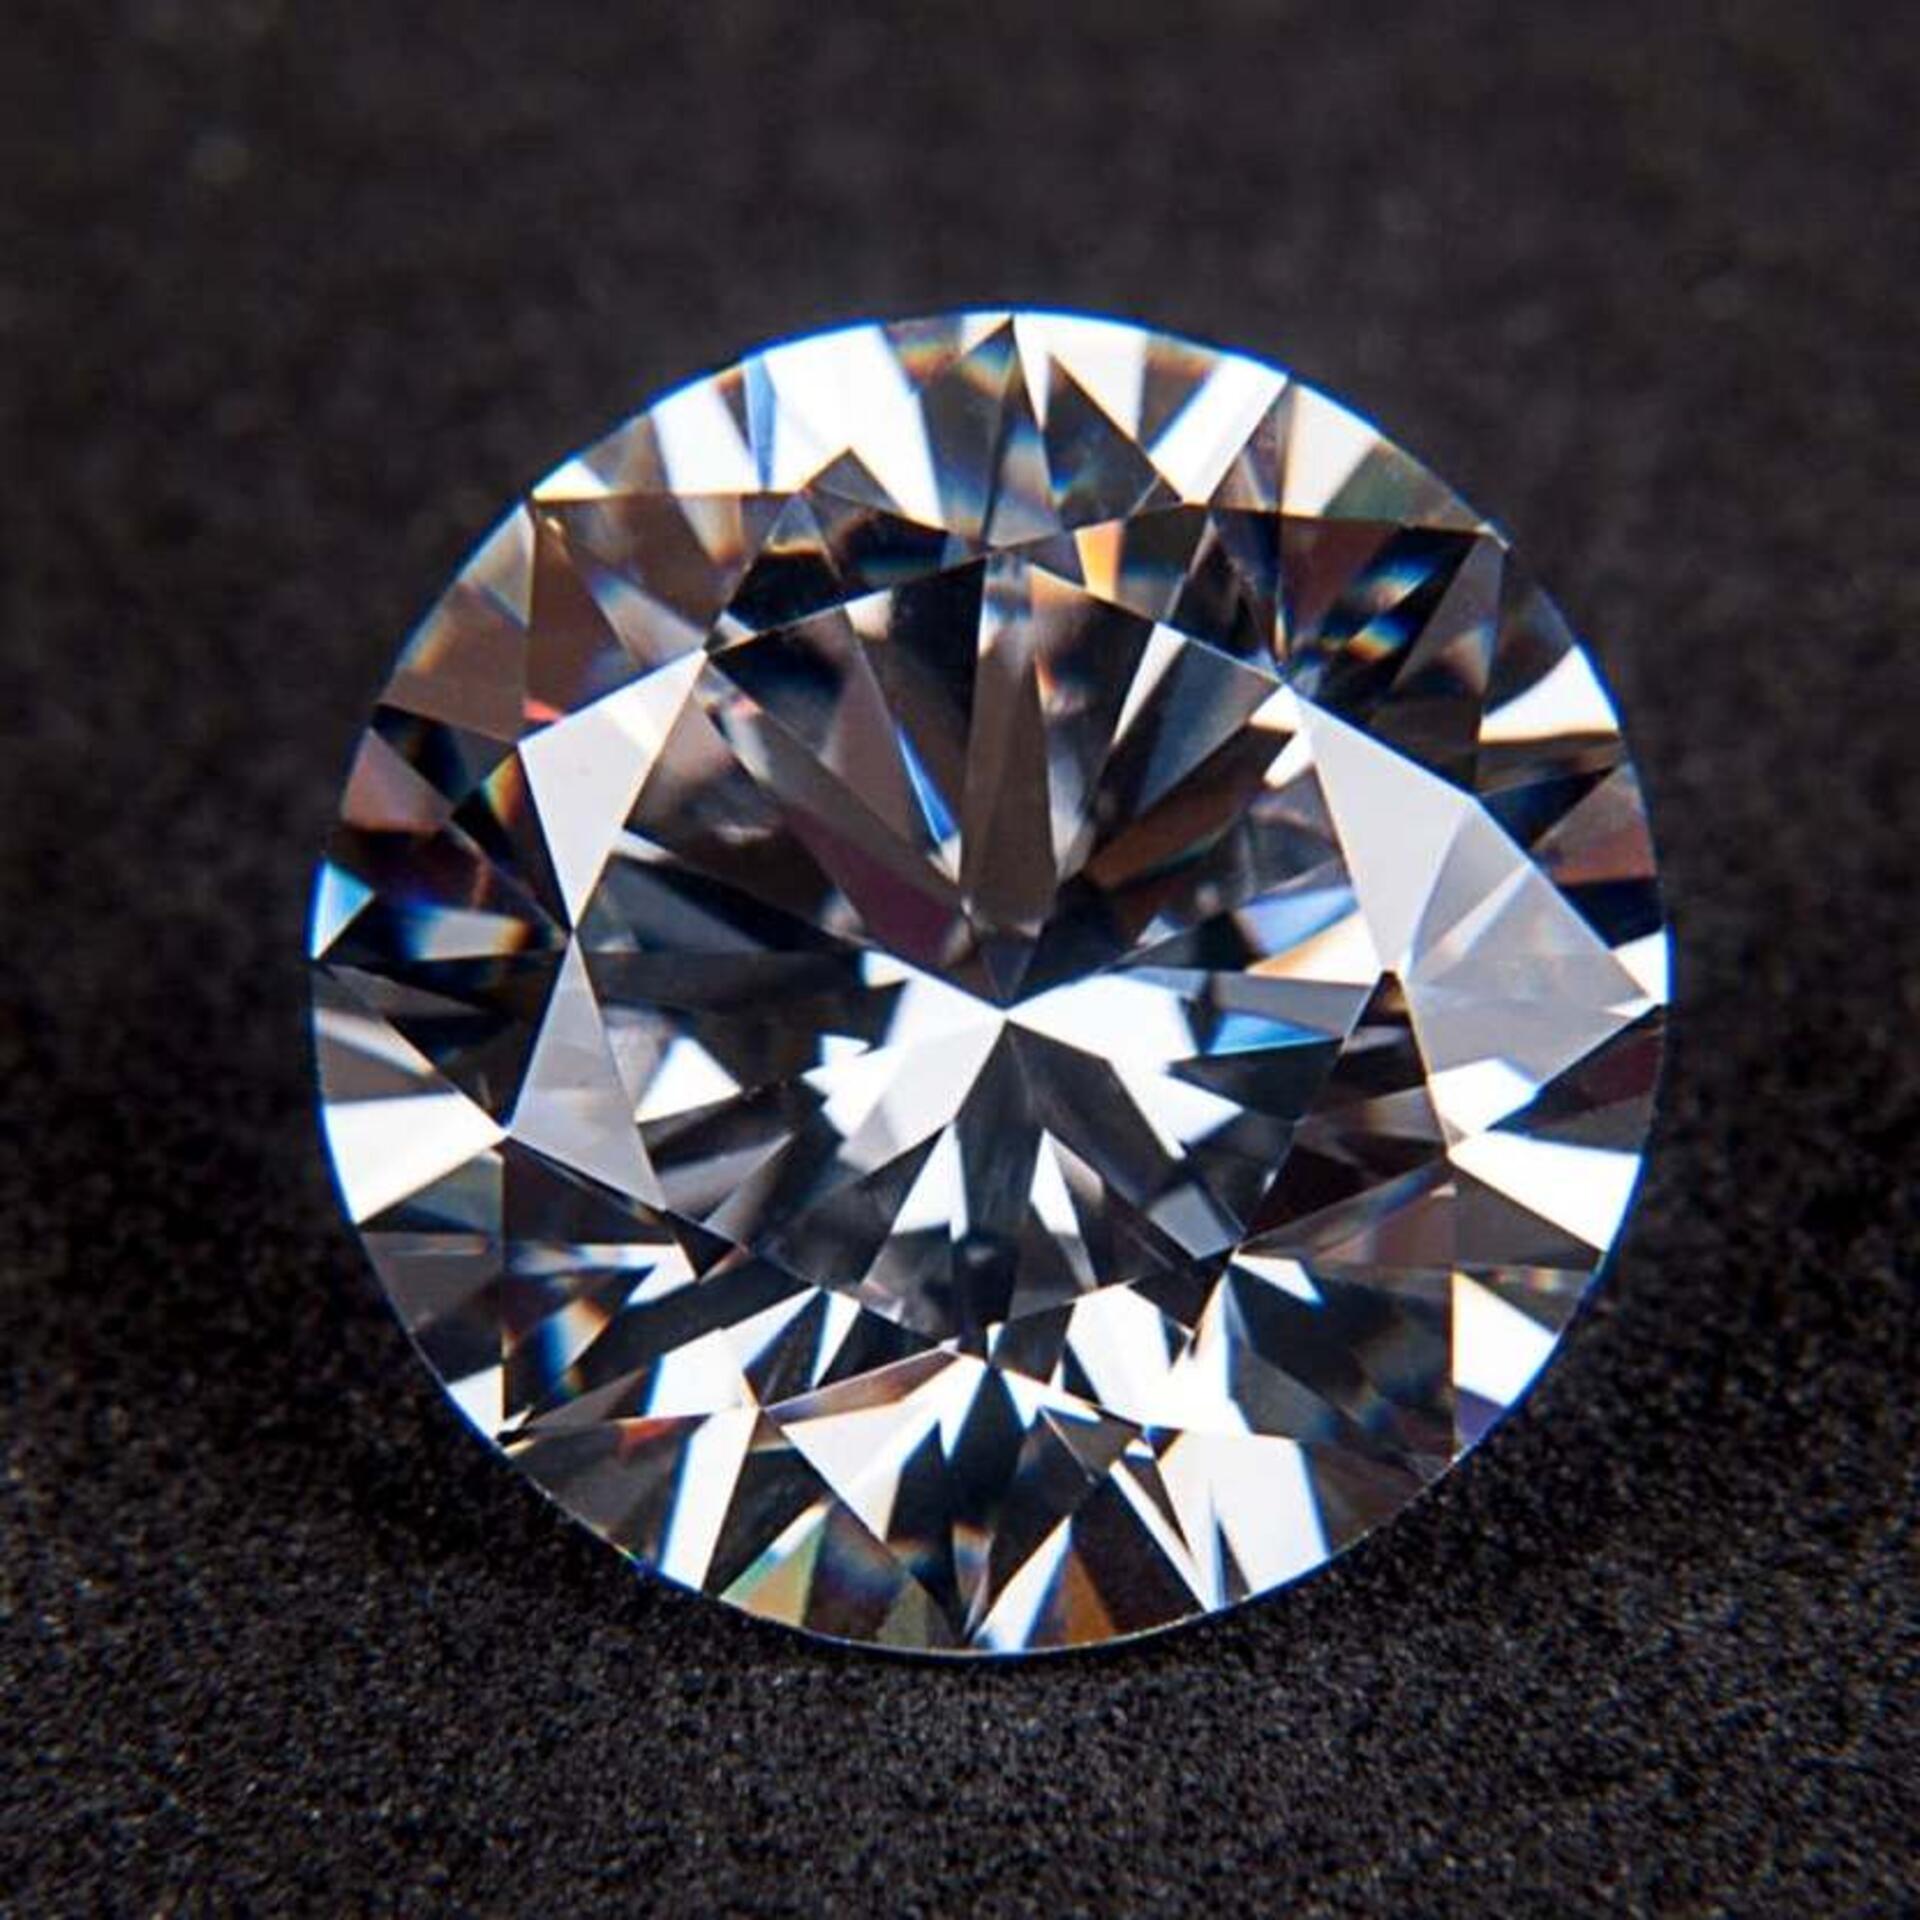 #wertvoll. Das Bild zeigt einen Diamanten in Großaufnahme vor schwearzem Hintergrund.